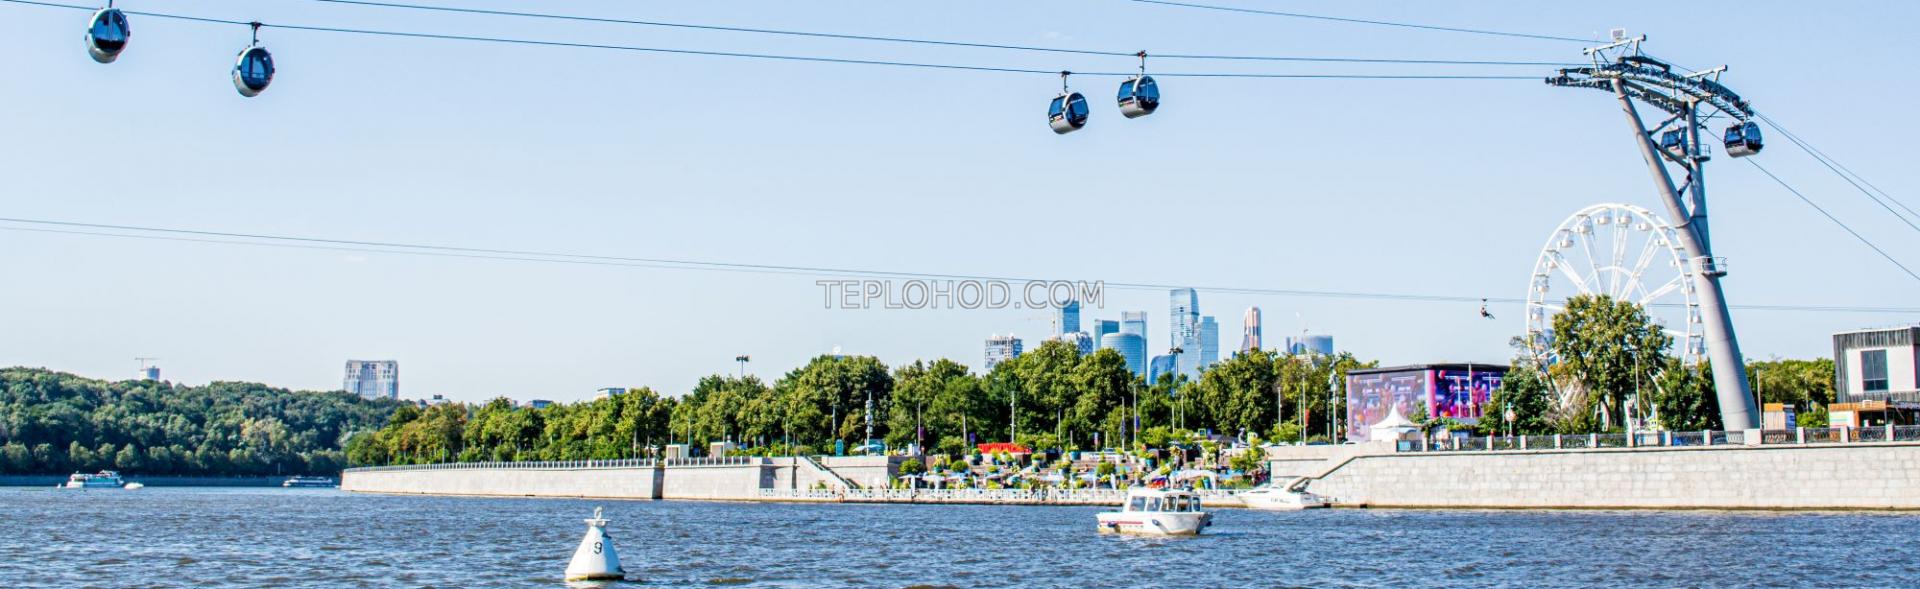 Гастрономический круиз по Москве-реке на панорамном теплоходе "Жемчужина"